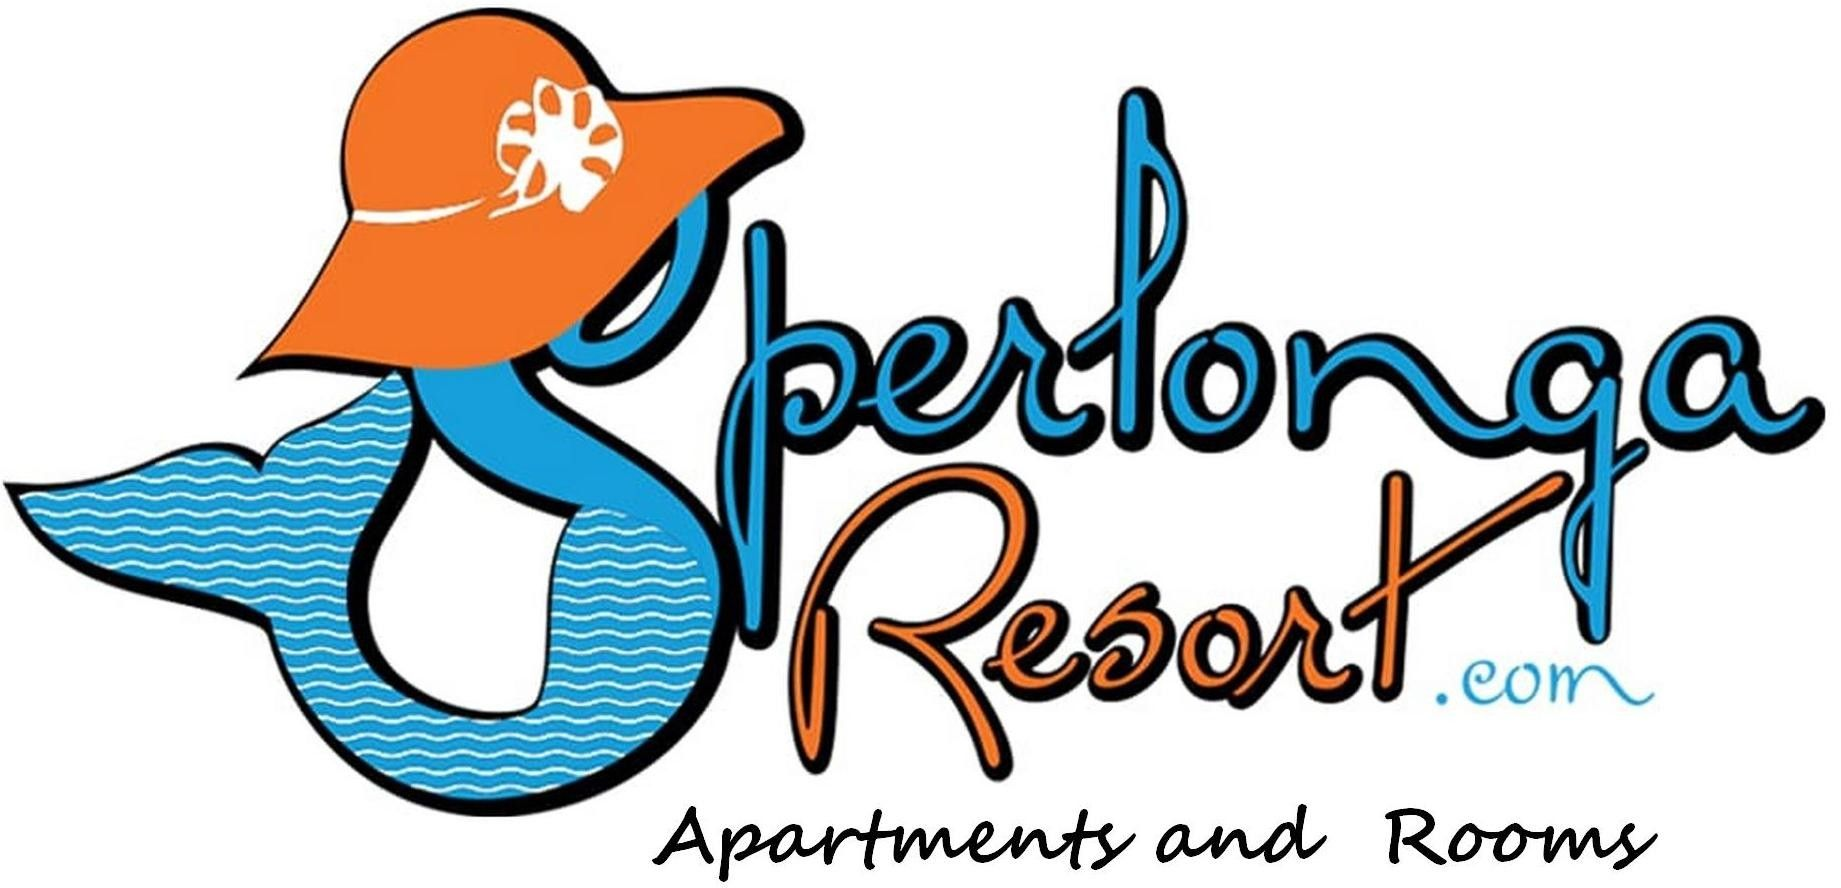 Sperlonga Resort